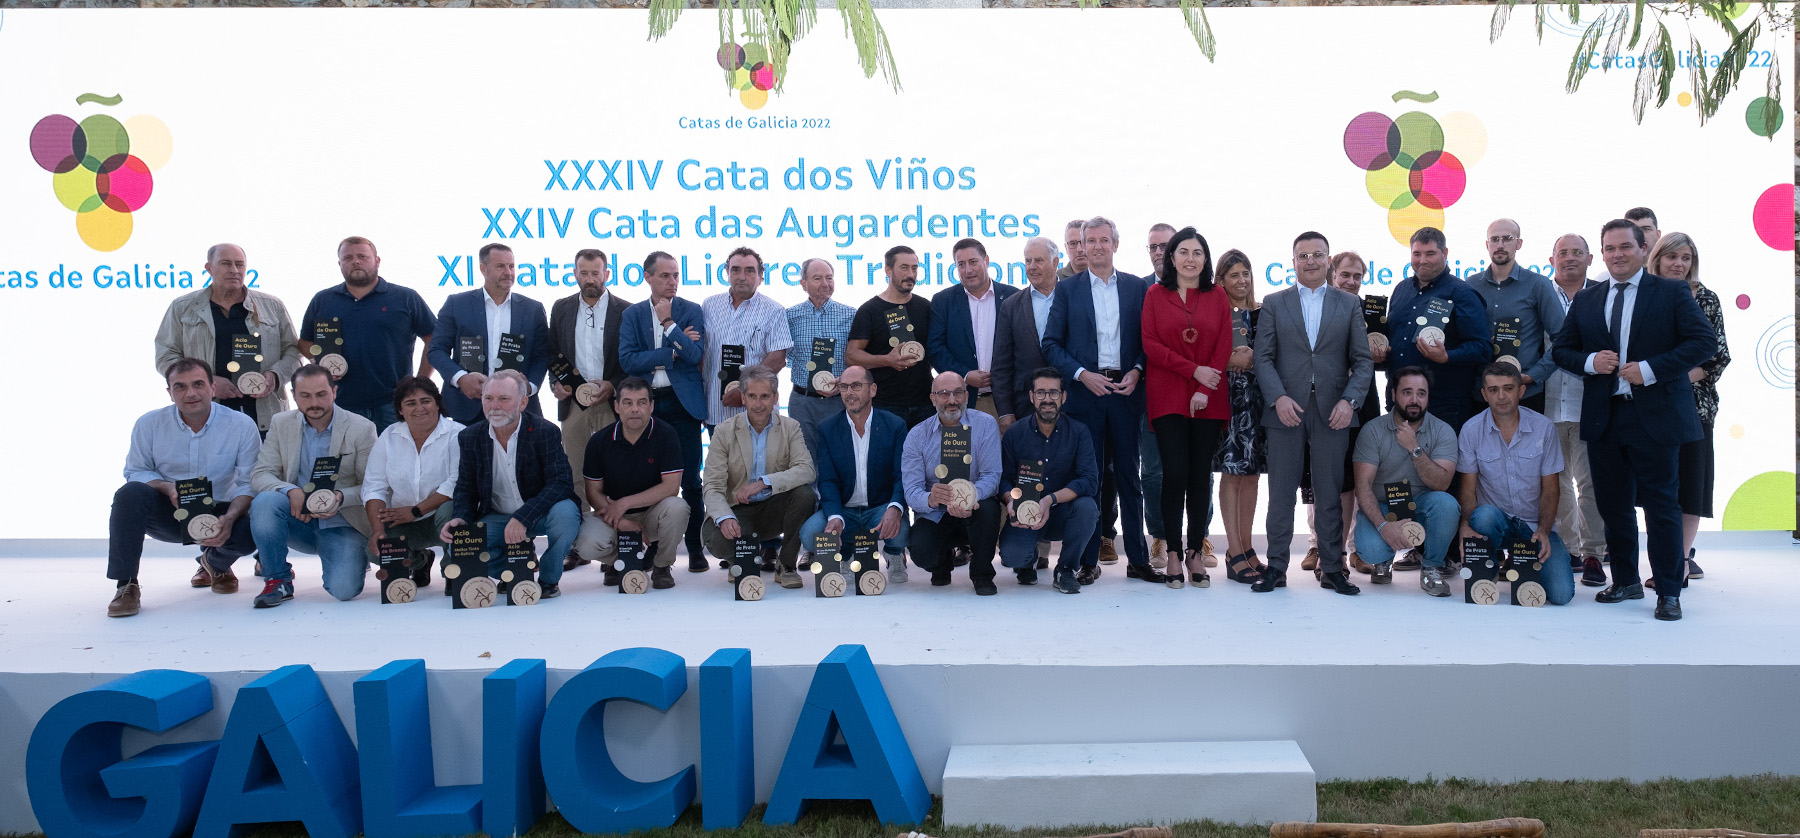 Estes son os viños e augardentes premiados nas Catas de Galicia 2022